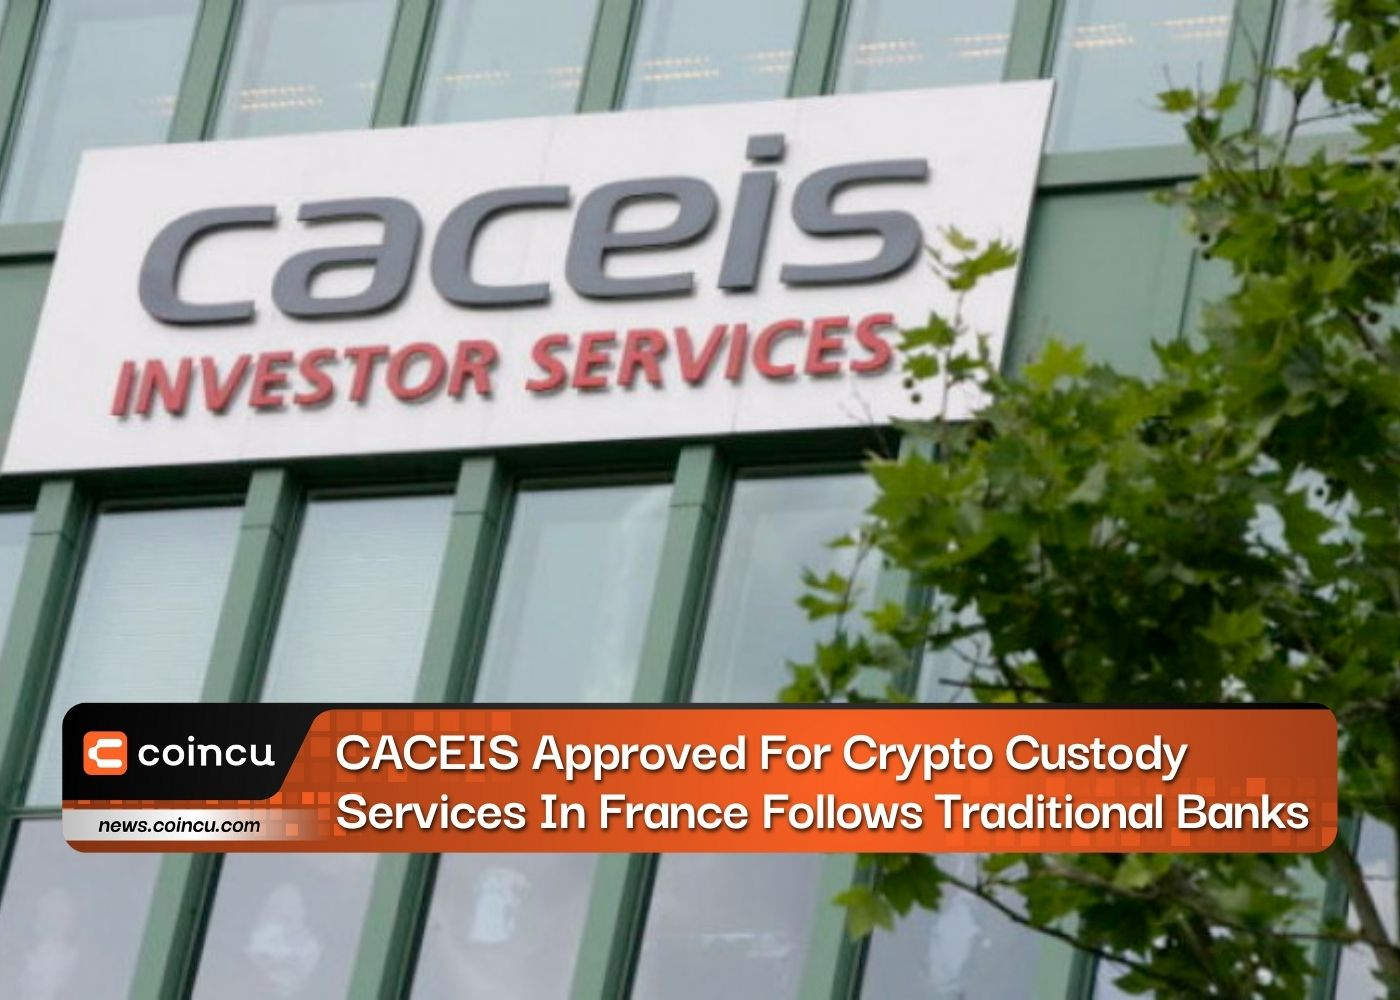 CACEIS Aprovado para Serviços de Custódia de Cripto na França Segue Bancos Tradicionais